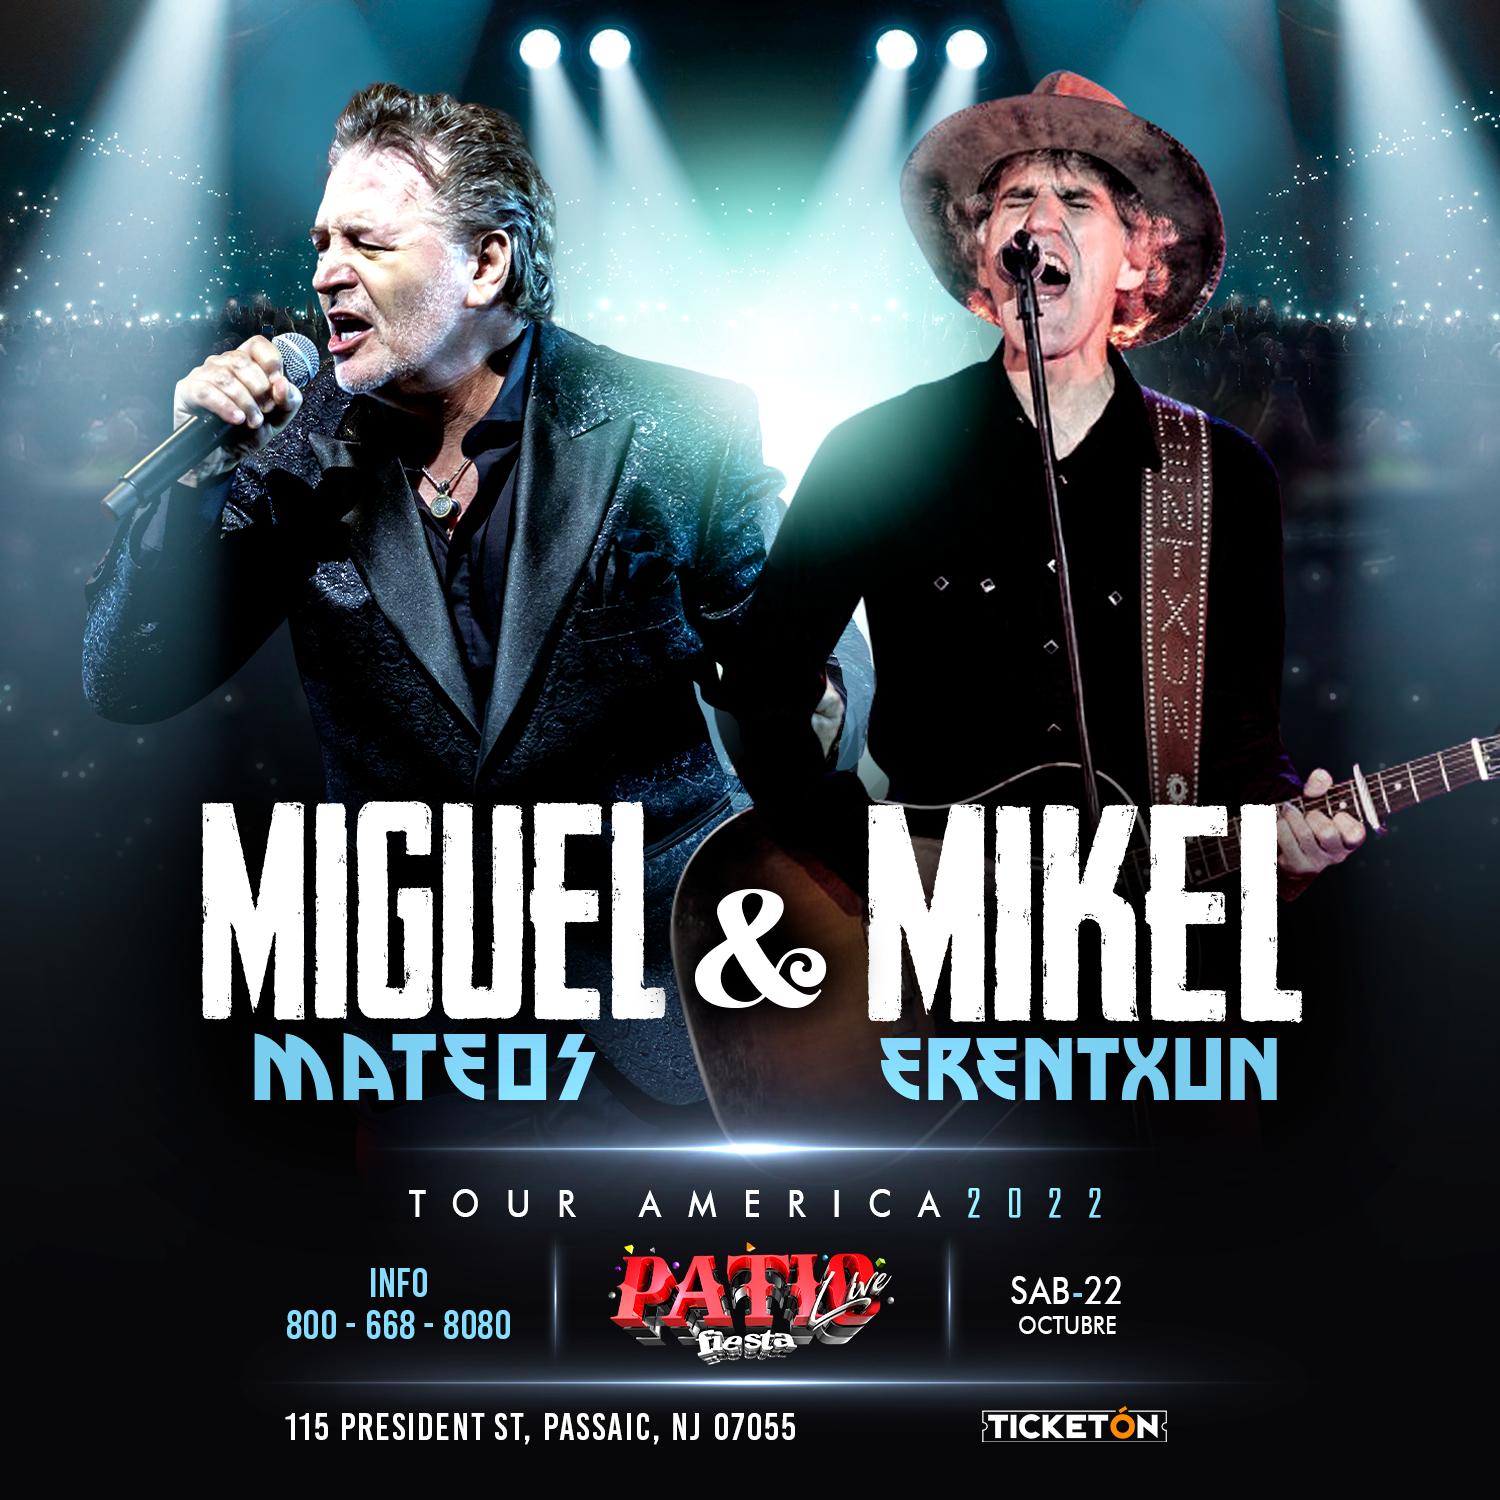 MIGUEL MATEOS & MIKEL ERENTXUN Tickets ExpressTix